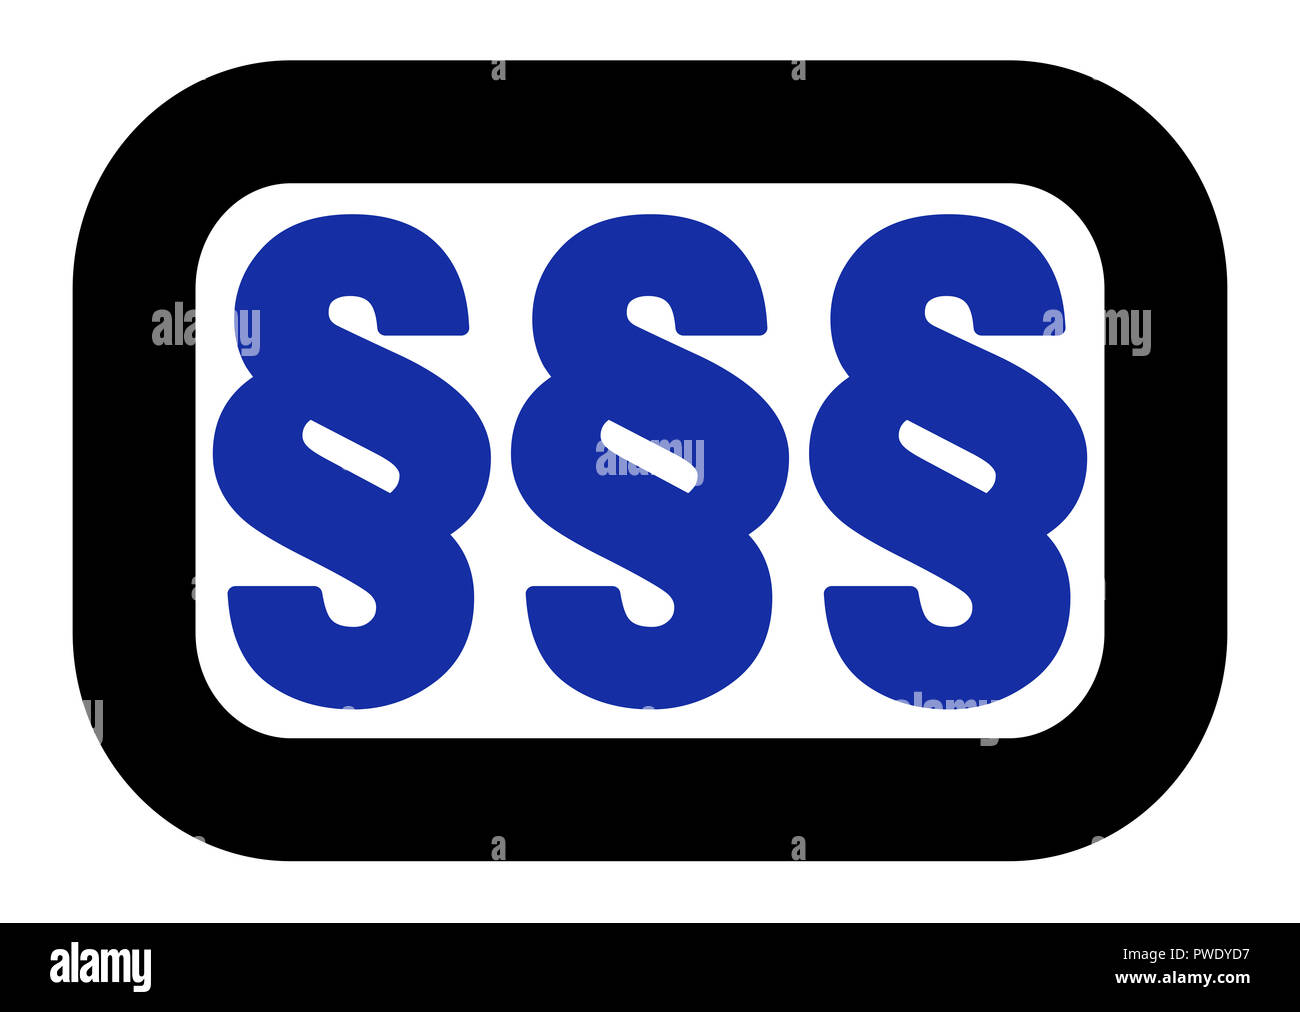 Absatz Zeichen logo, drei blaue Symbole, abgerundete, schwarzen Rahmen. Einfache Illustration auf weißem Hintergrund. Stockfoto